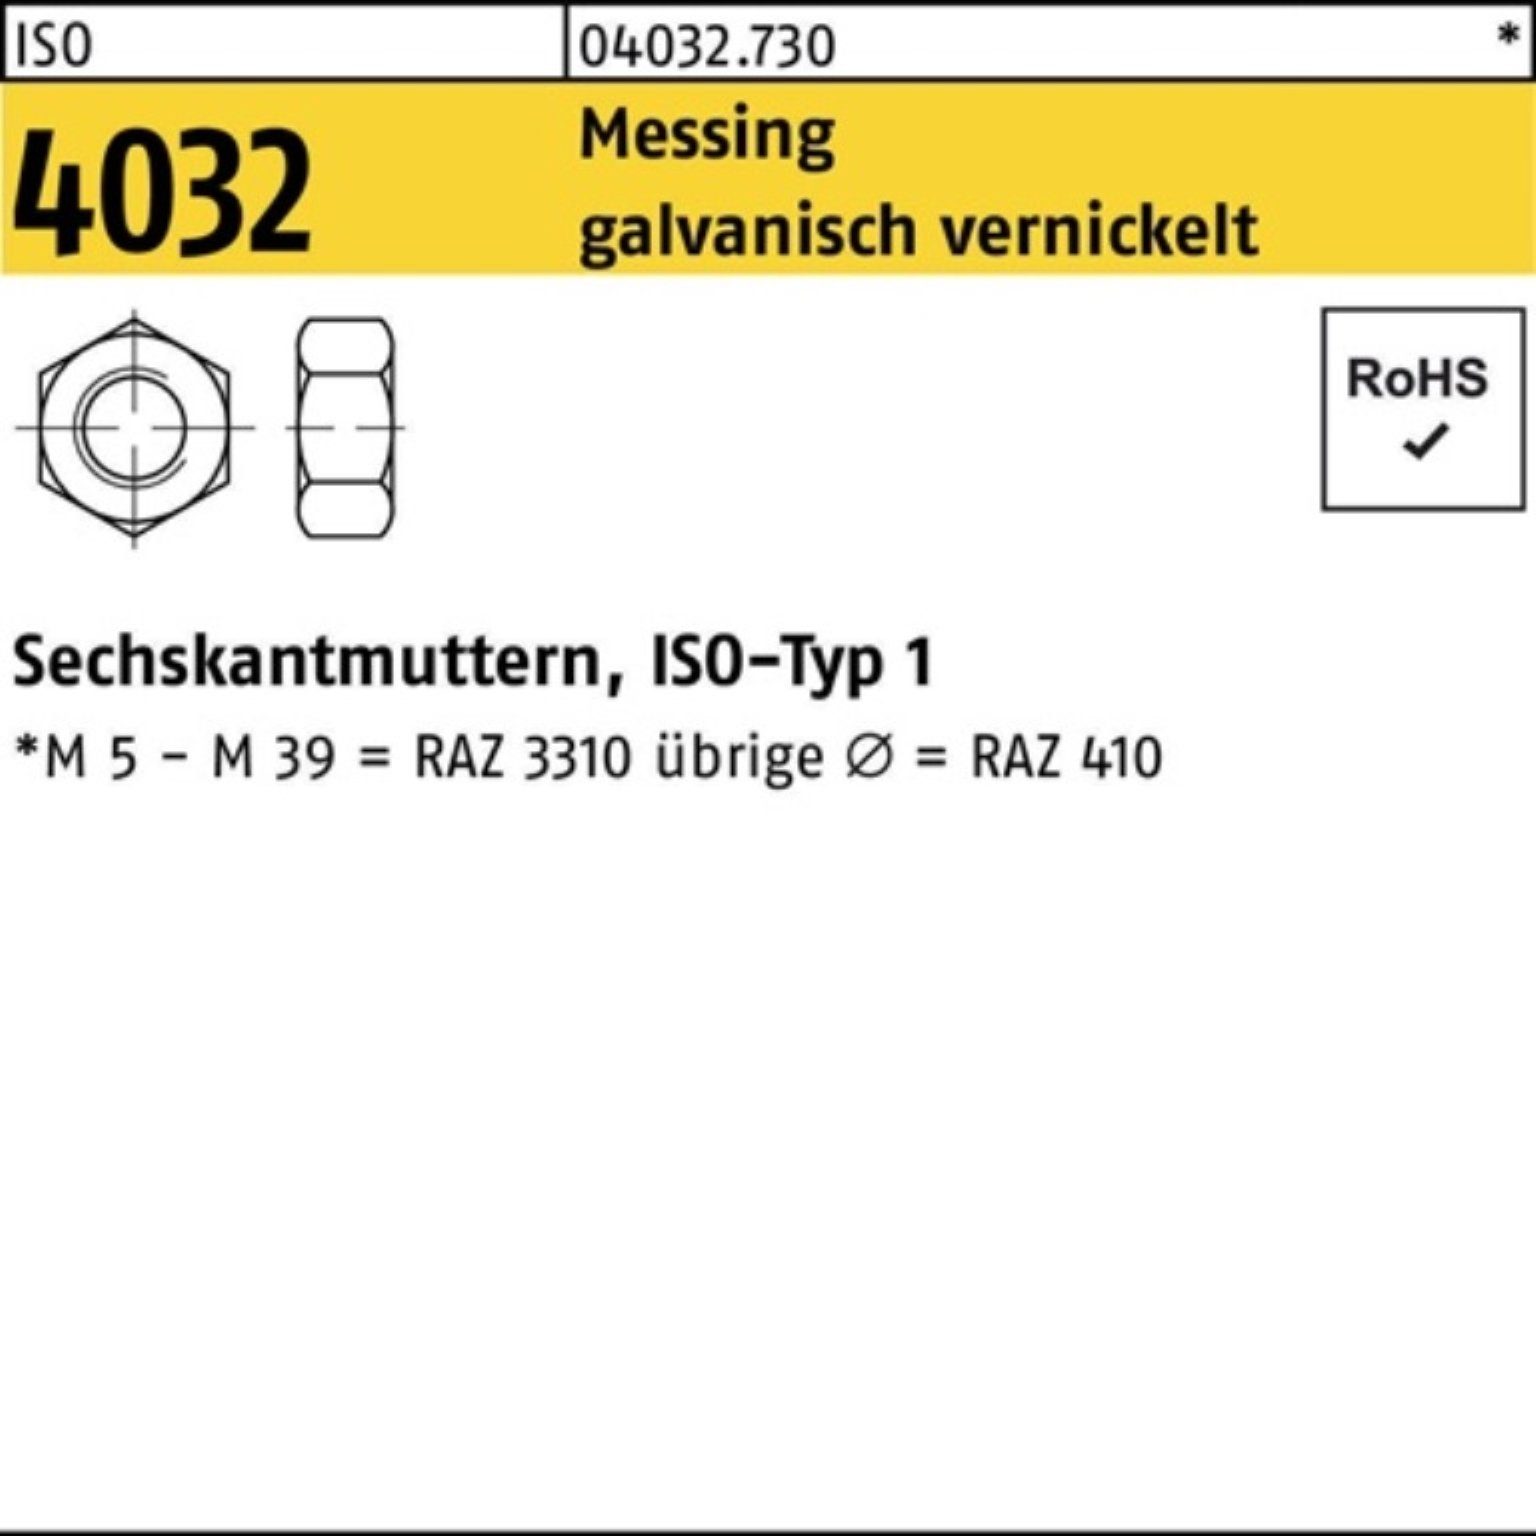 Bufab Muttern 100er Pack Sechskantmutter ISO 4032 M10 Messing galv. vernickelt 100 S